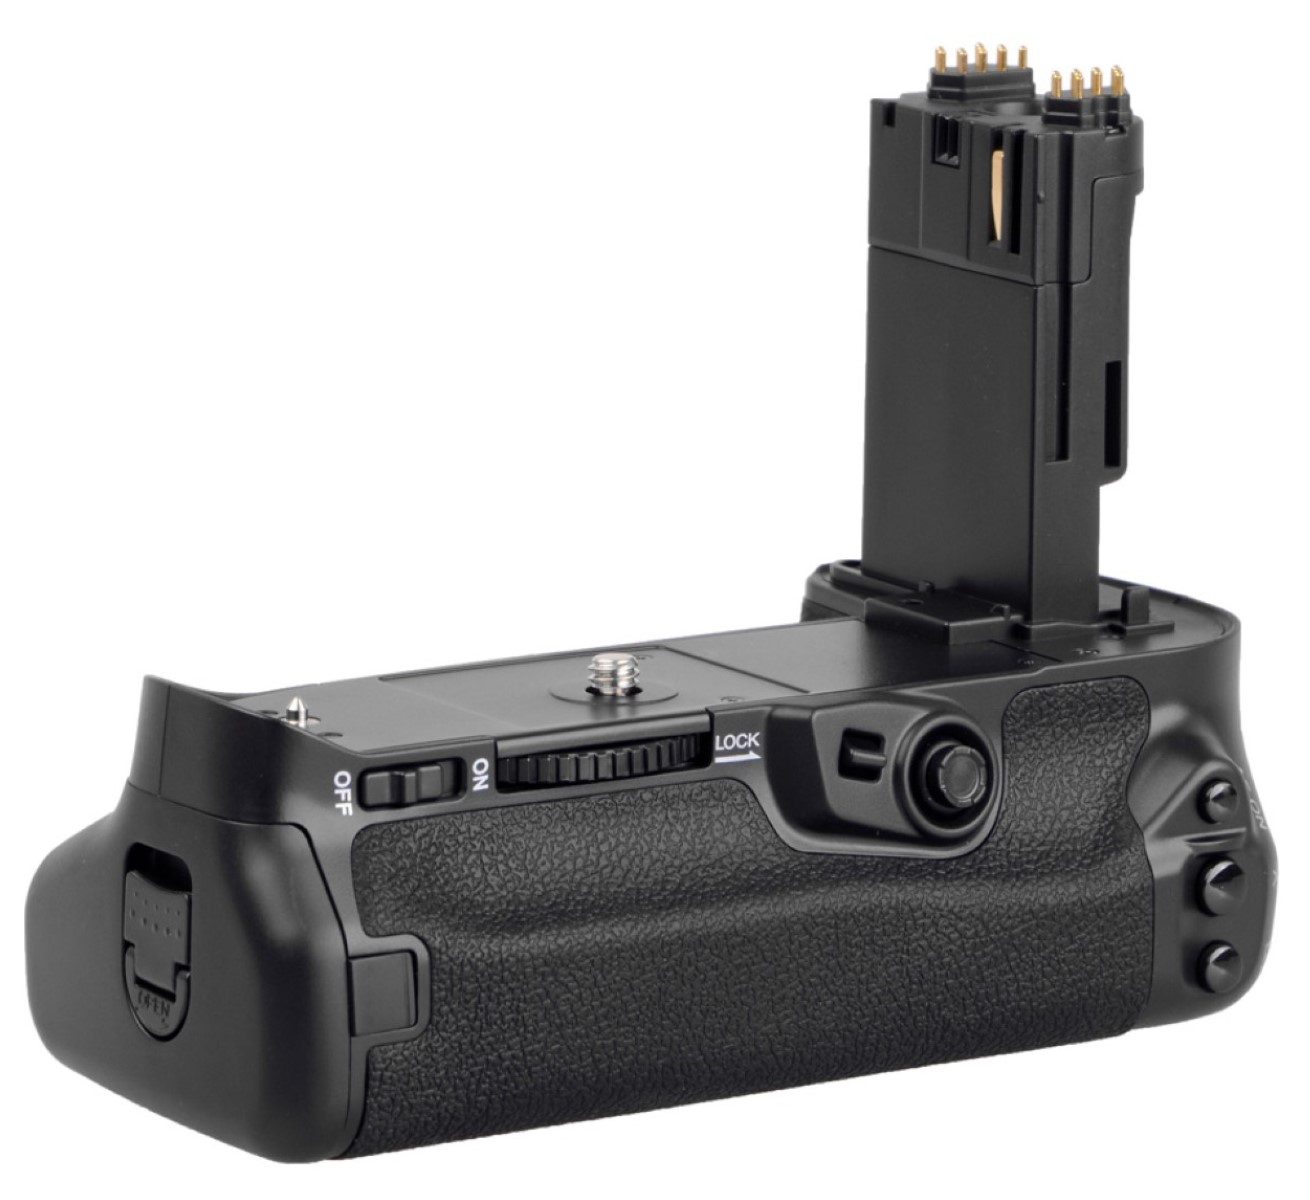 Meike Batteriegriff für Canon EOS 7D Mark II wie BG-E16